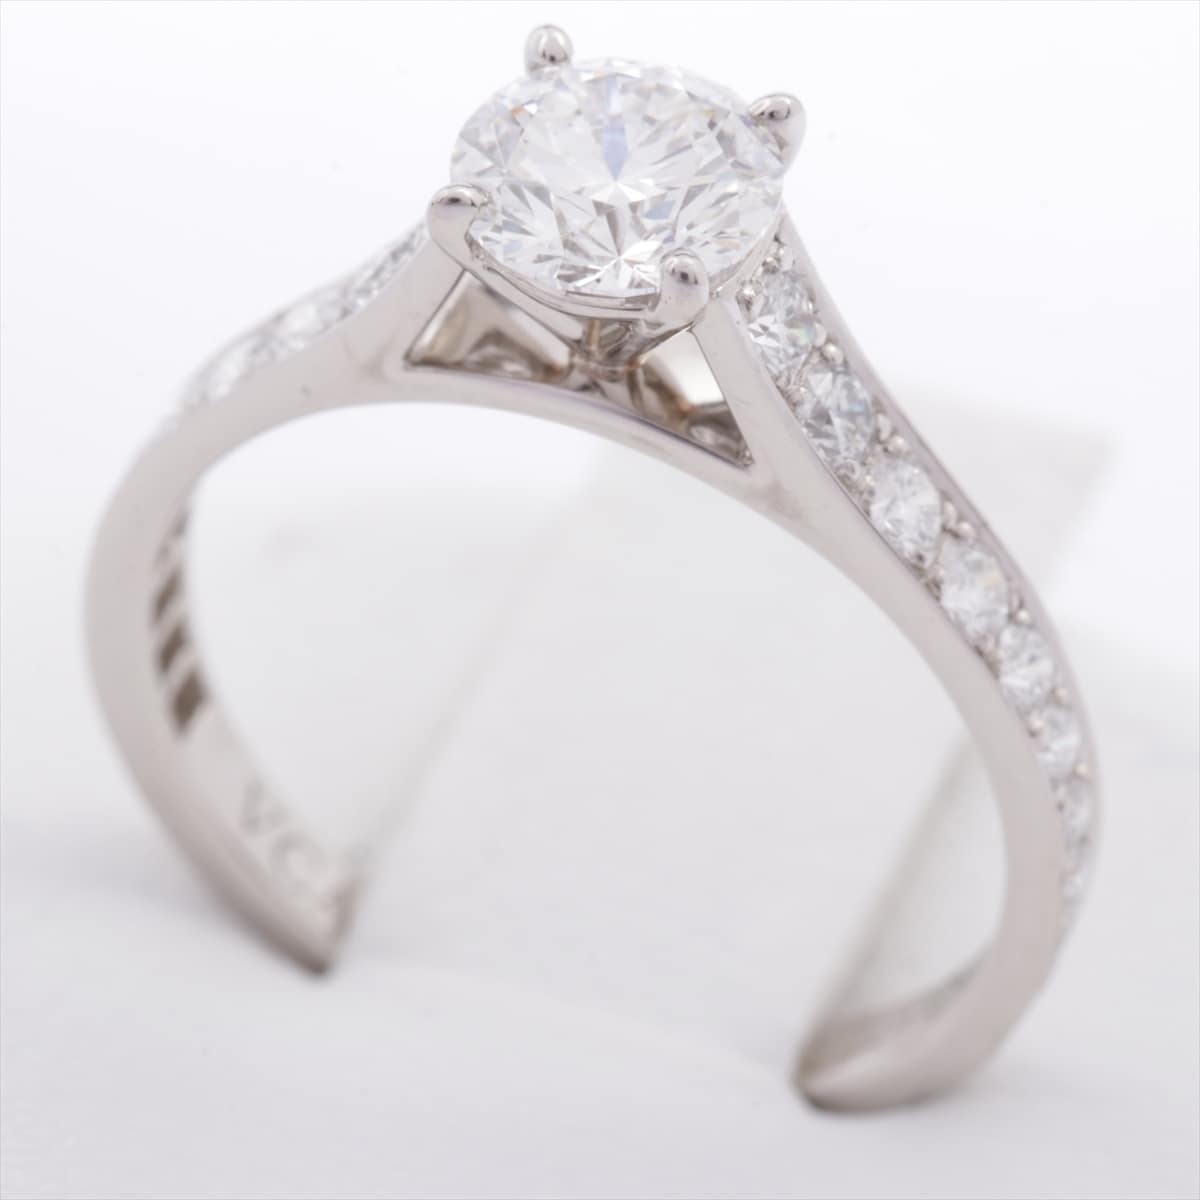 Van Cleef & Arpels Romance Solitaire diamond rings Pt950 2.2g 0.51 D VVS2 3EX NONE 46